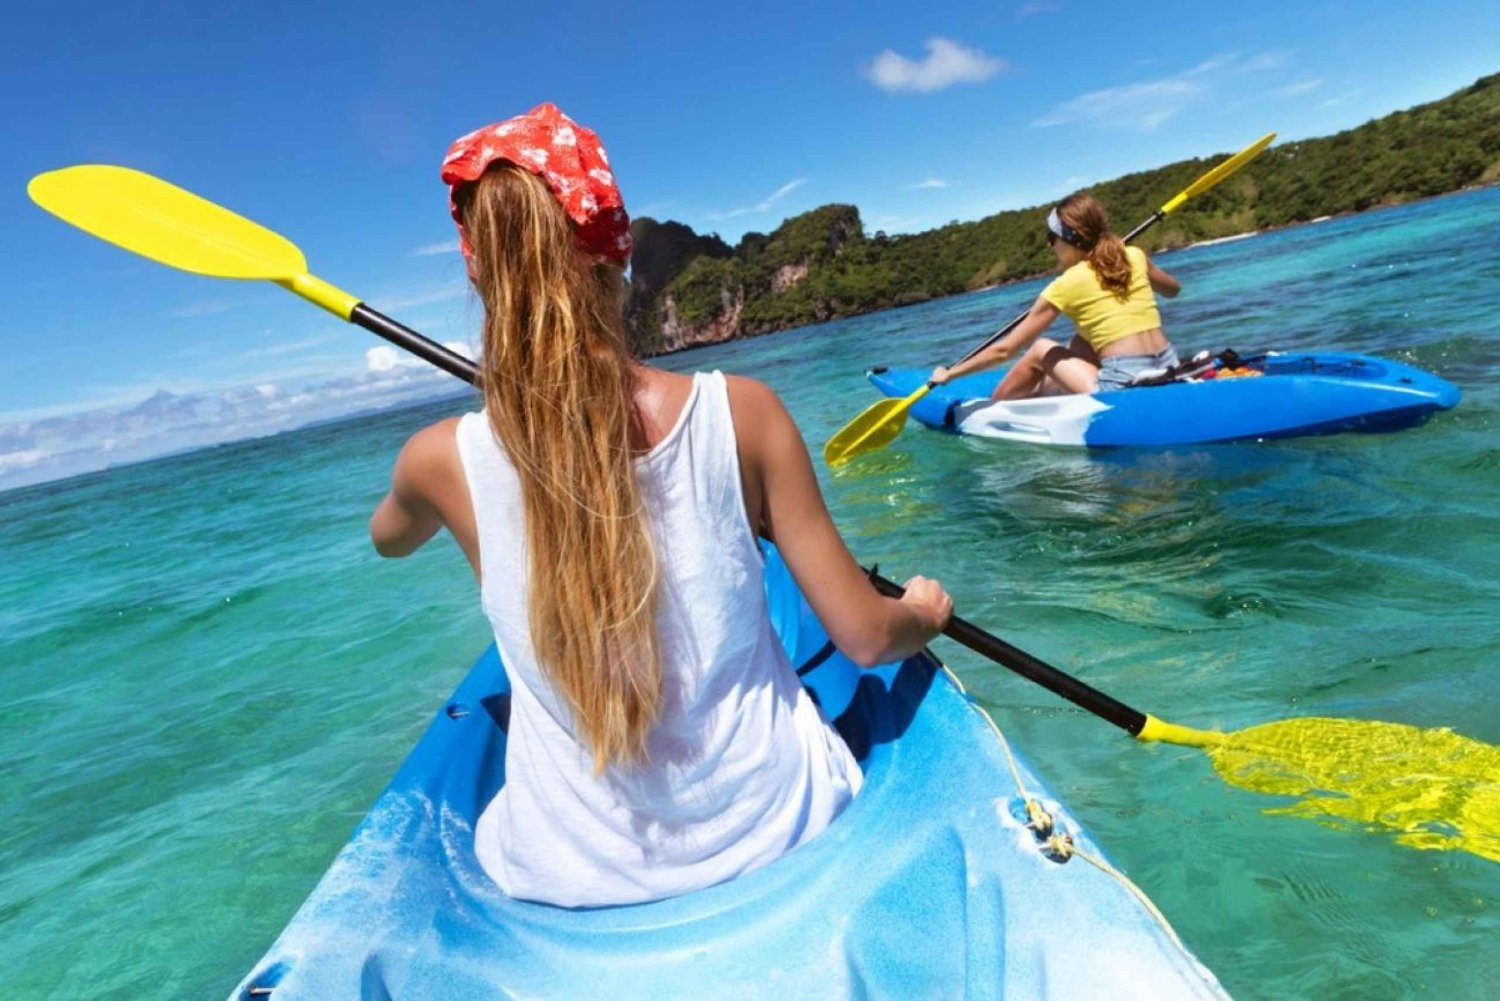 Condado: Single Kayak Rental